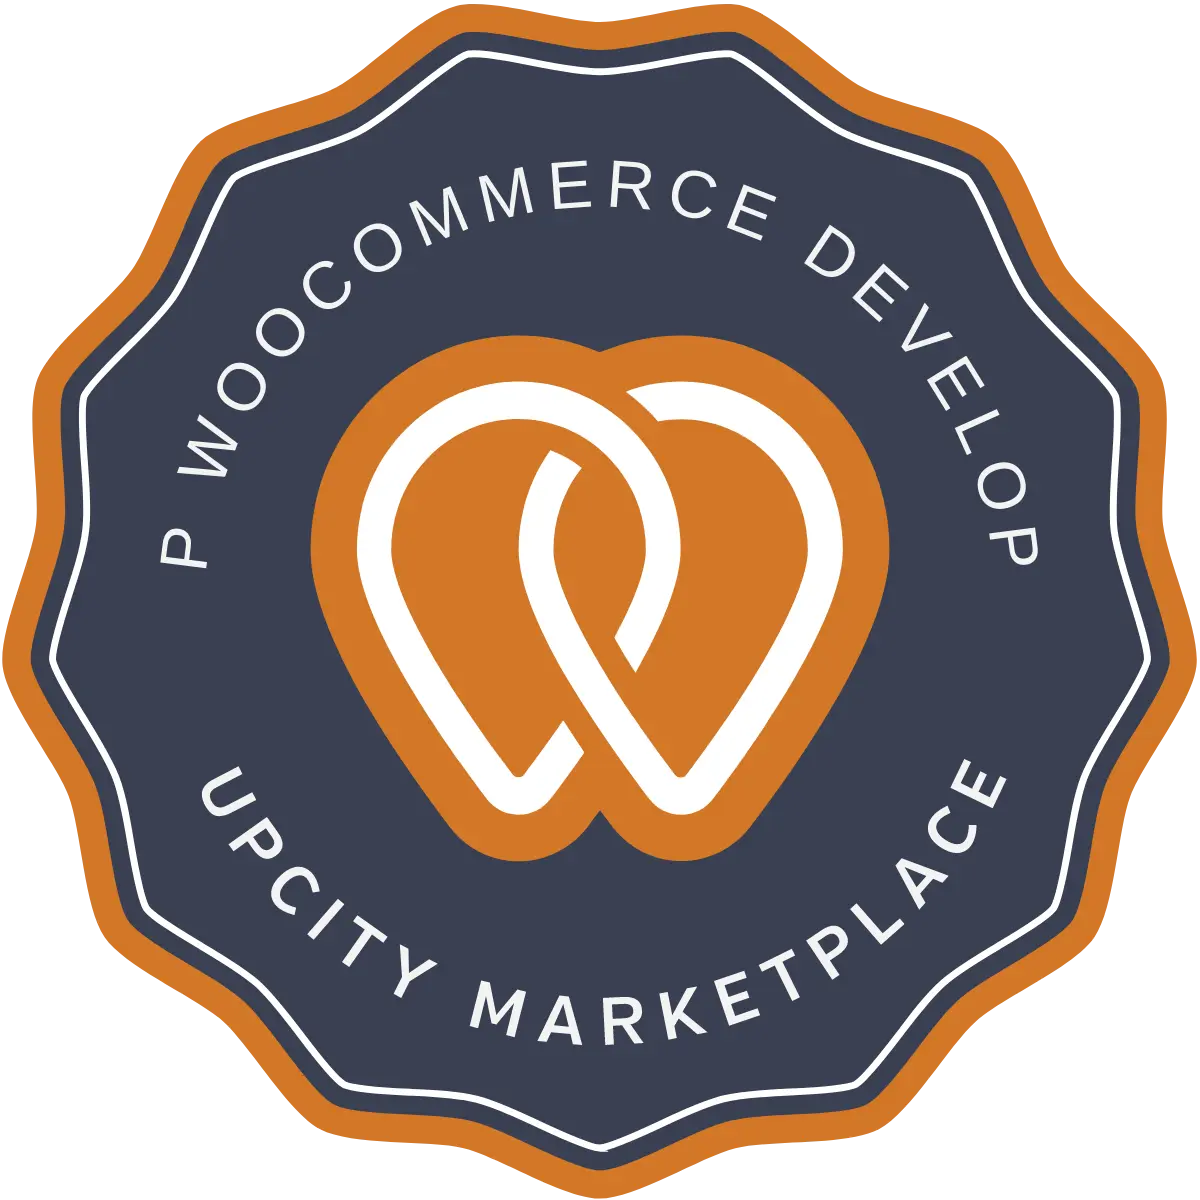 upcity ecommerce badge